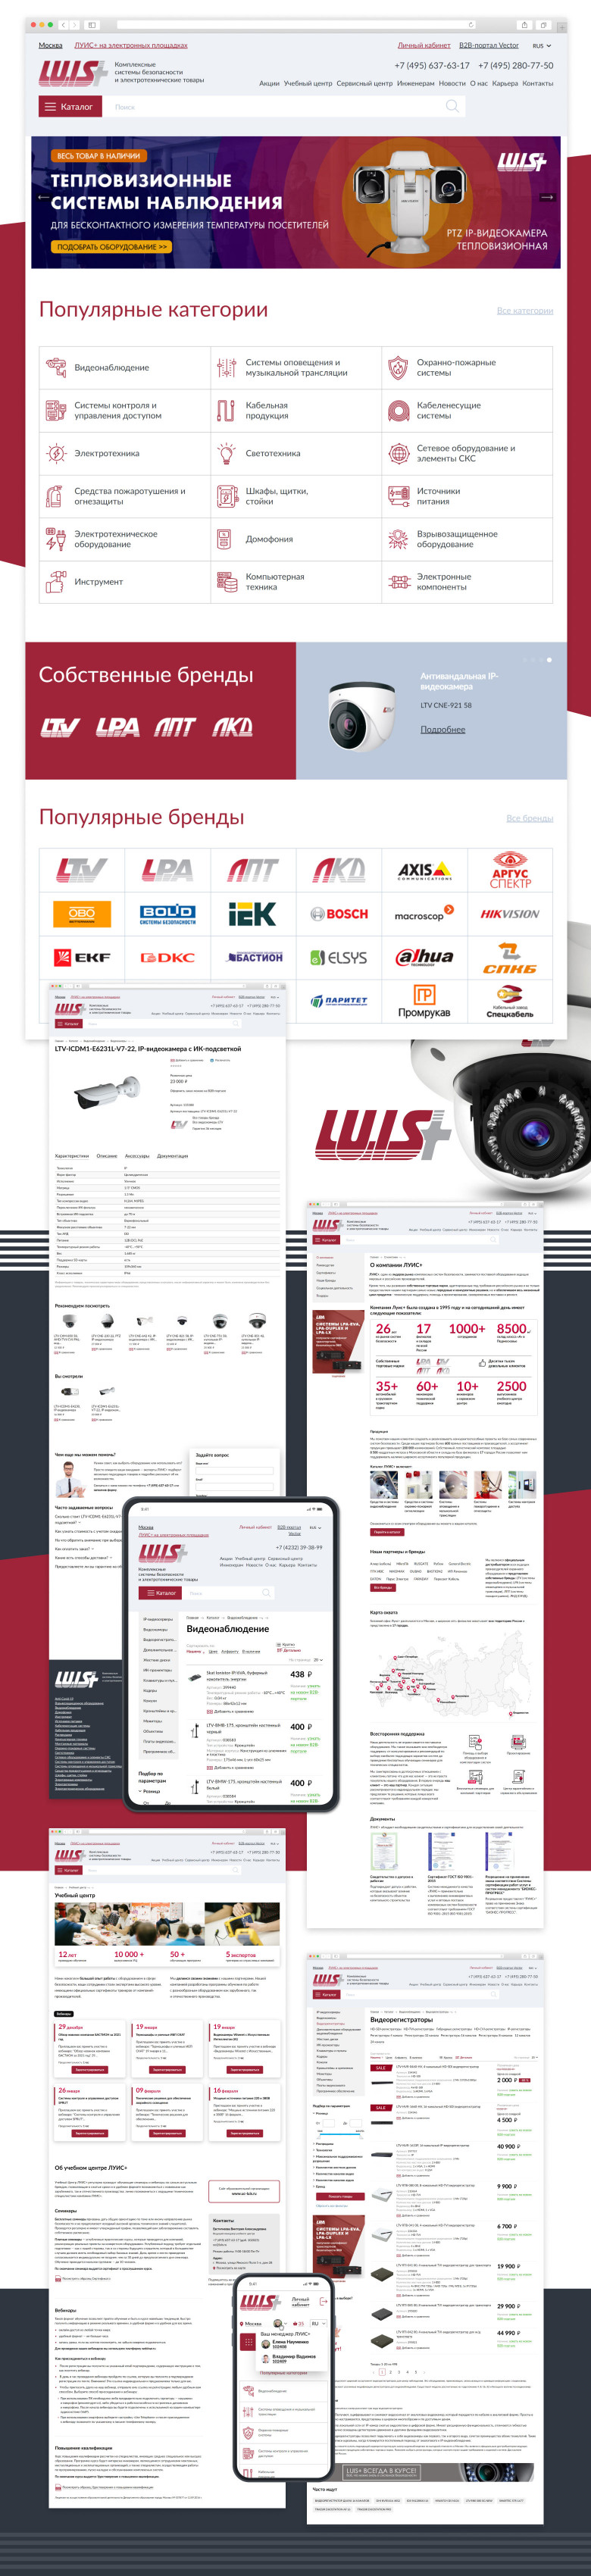 B2B портал производителя и поставщика комплексных систем безопасности «ЛУИС+»